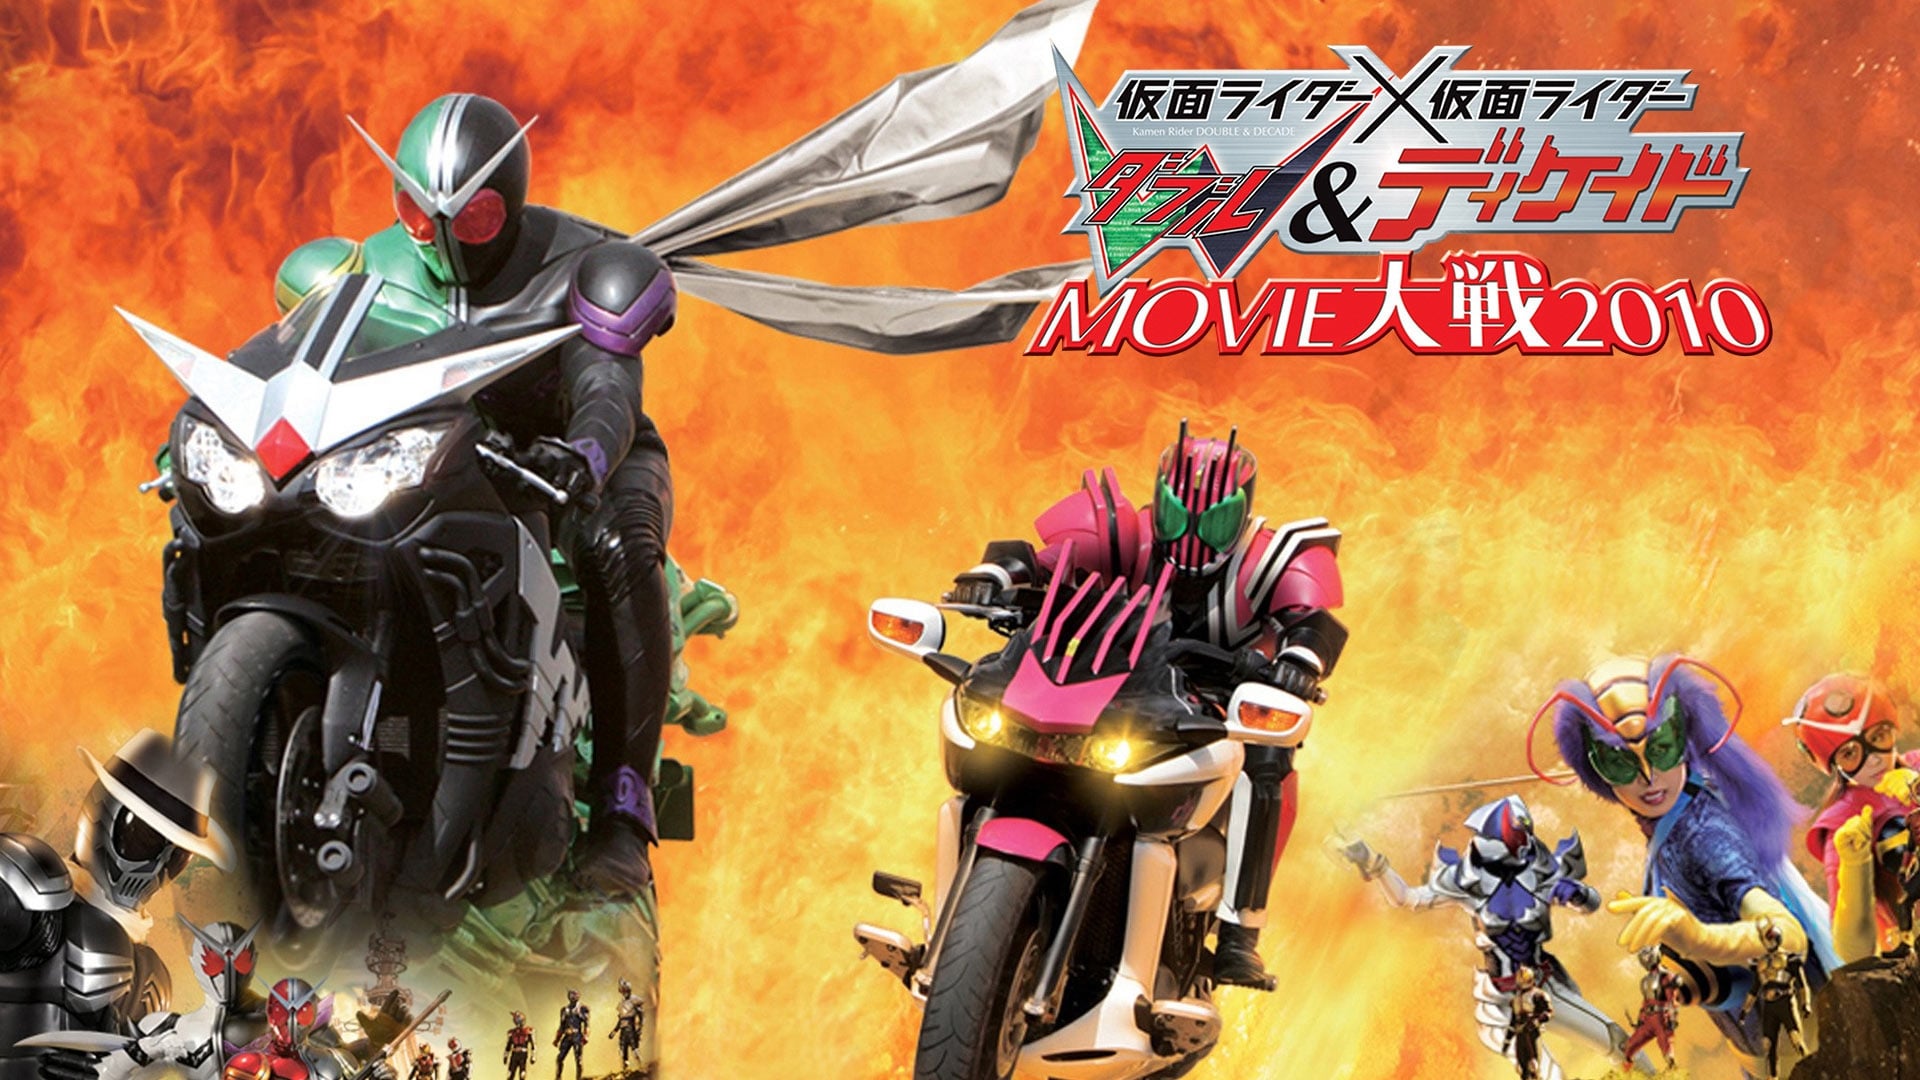 Movie Taise - Kamen Rider W & Decade